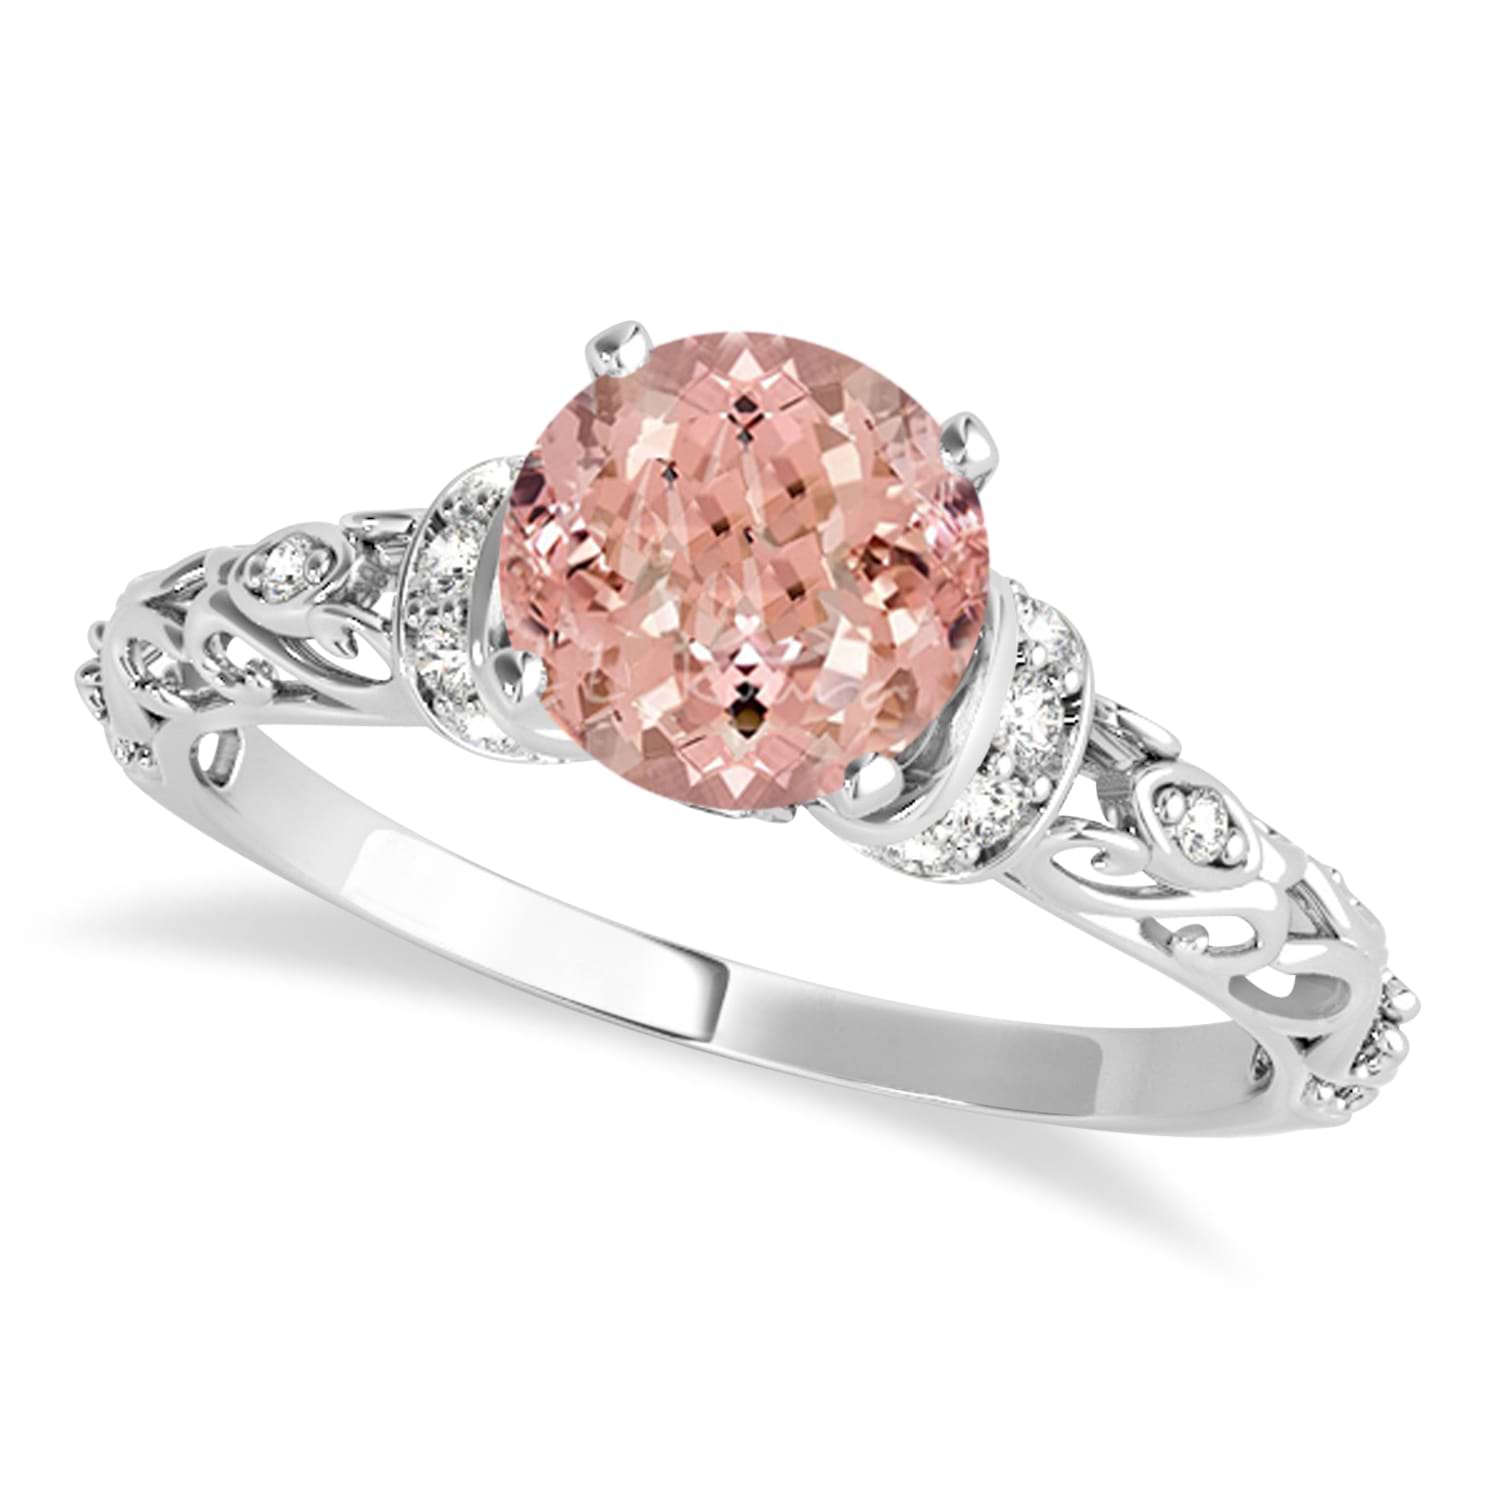 Morganite & Diamond Antique Style Engagement Ring Platinum (0.87ct)